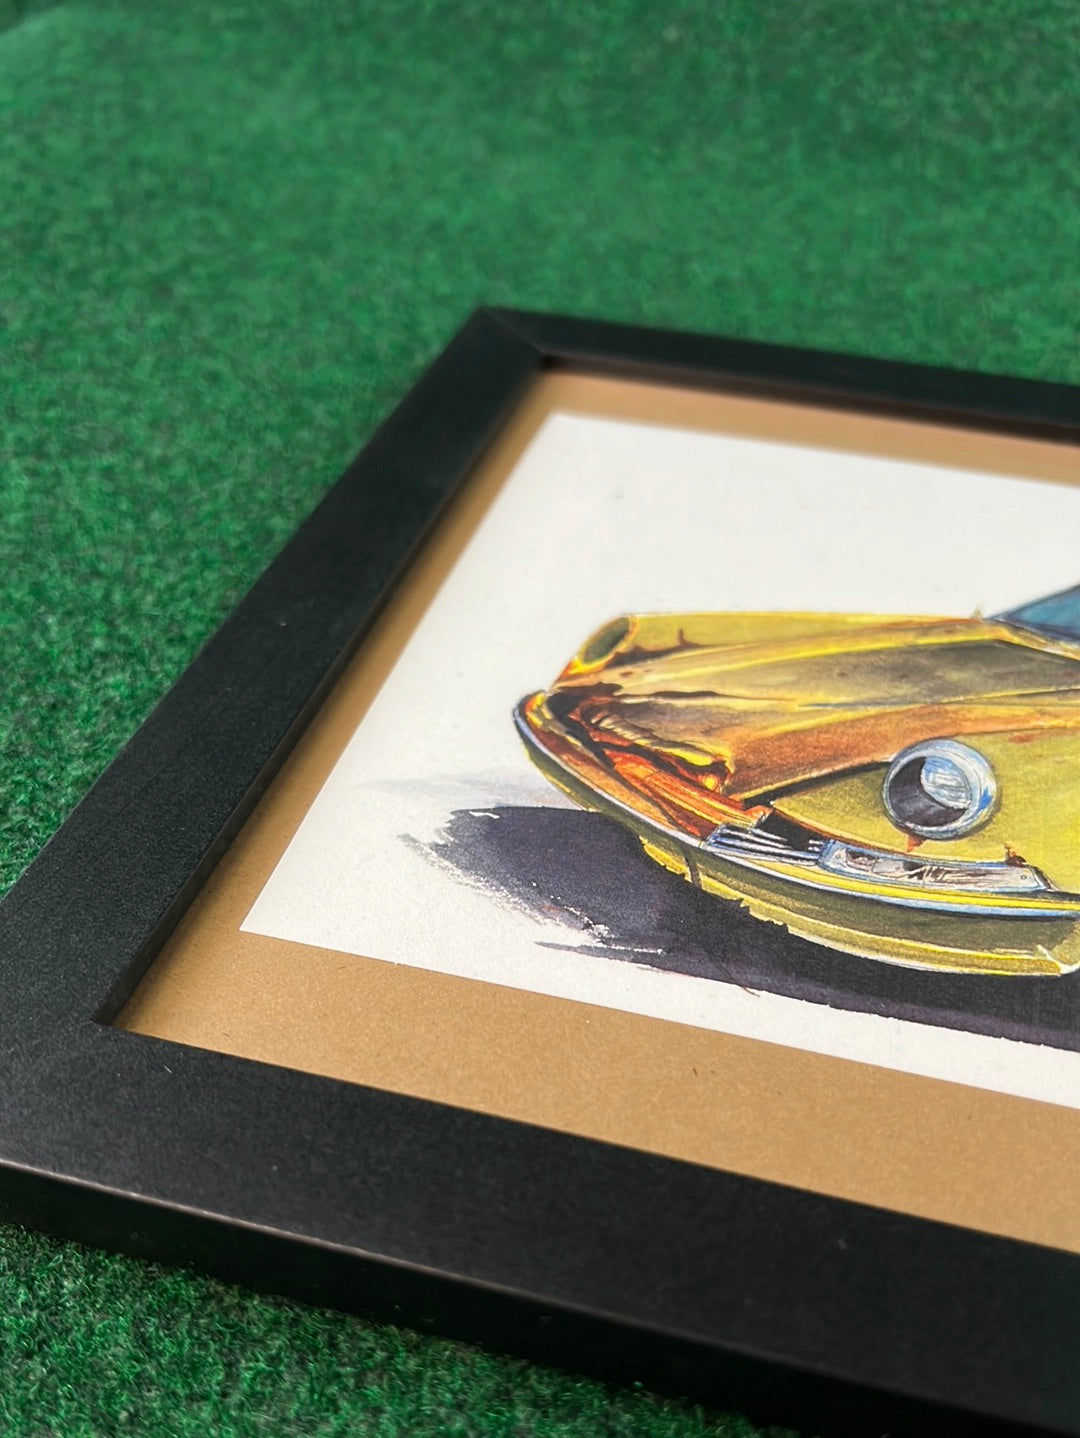 Junk Yard Rusty Yellow Porsche 912 - Framed Print